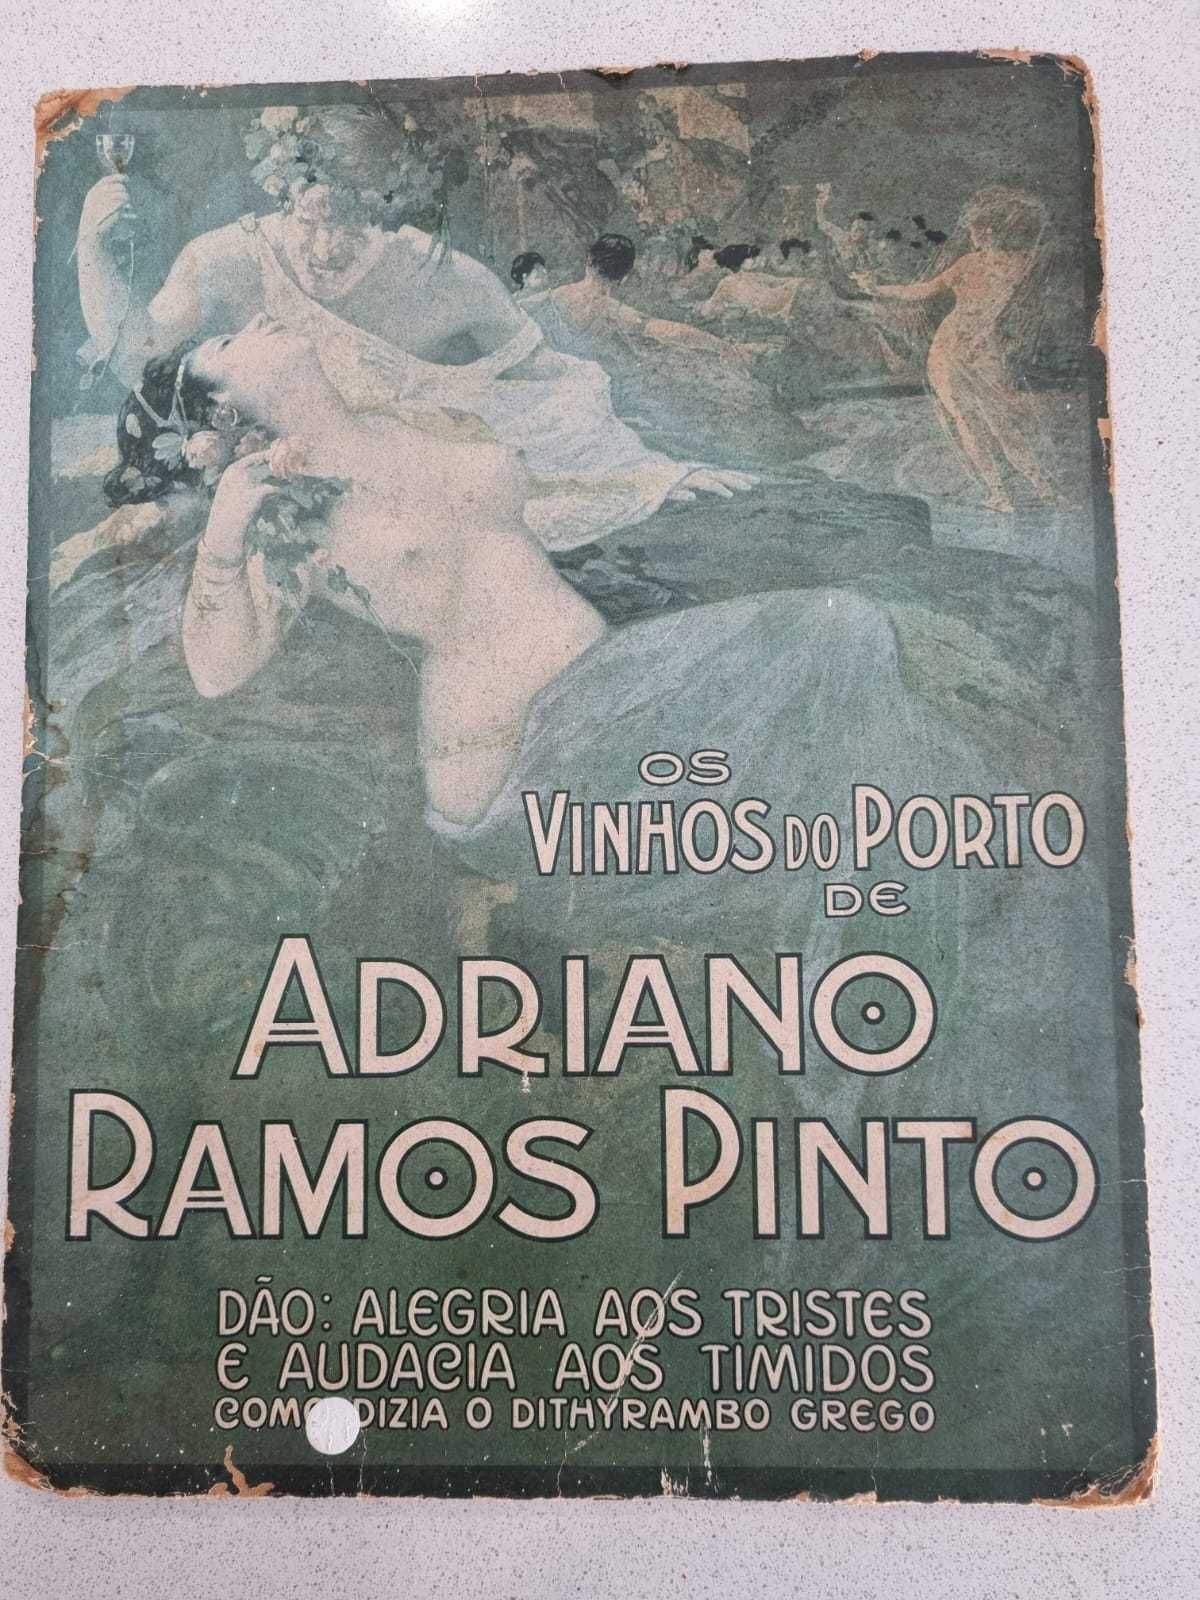 2x cartão antigo de vinhos "Os vinhos do Porto de Adriano Ramos Pinto"